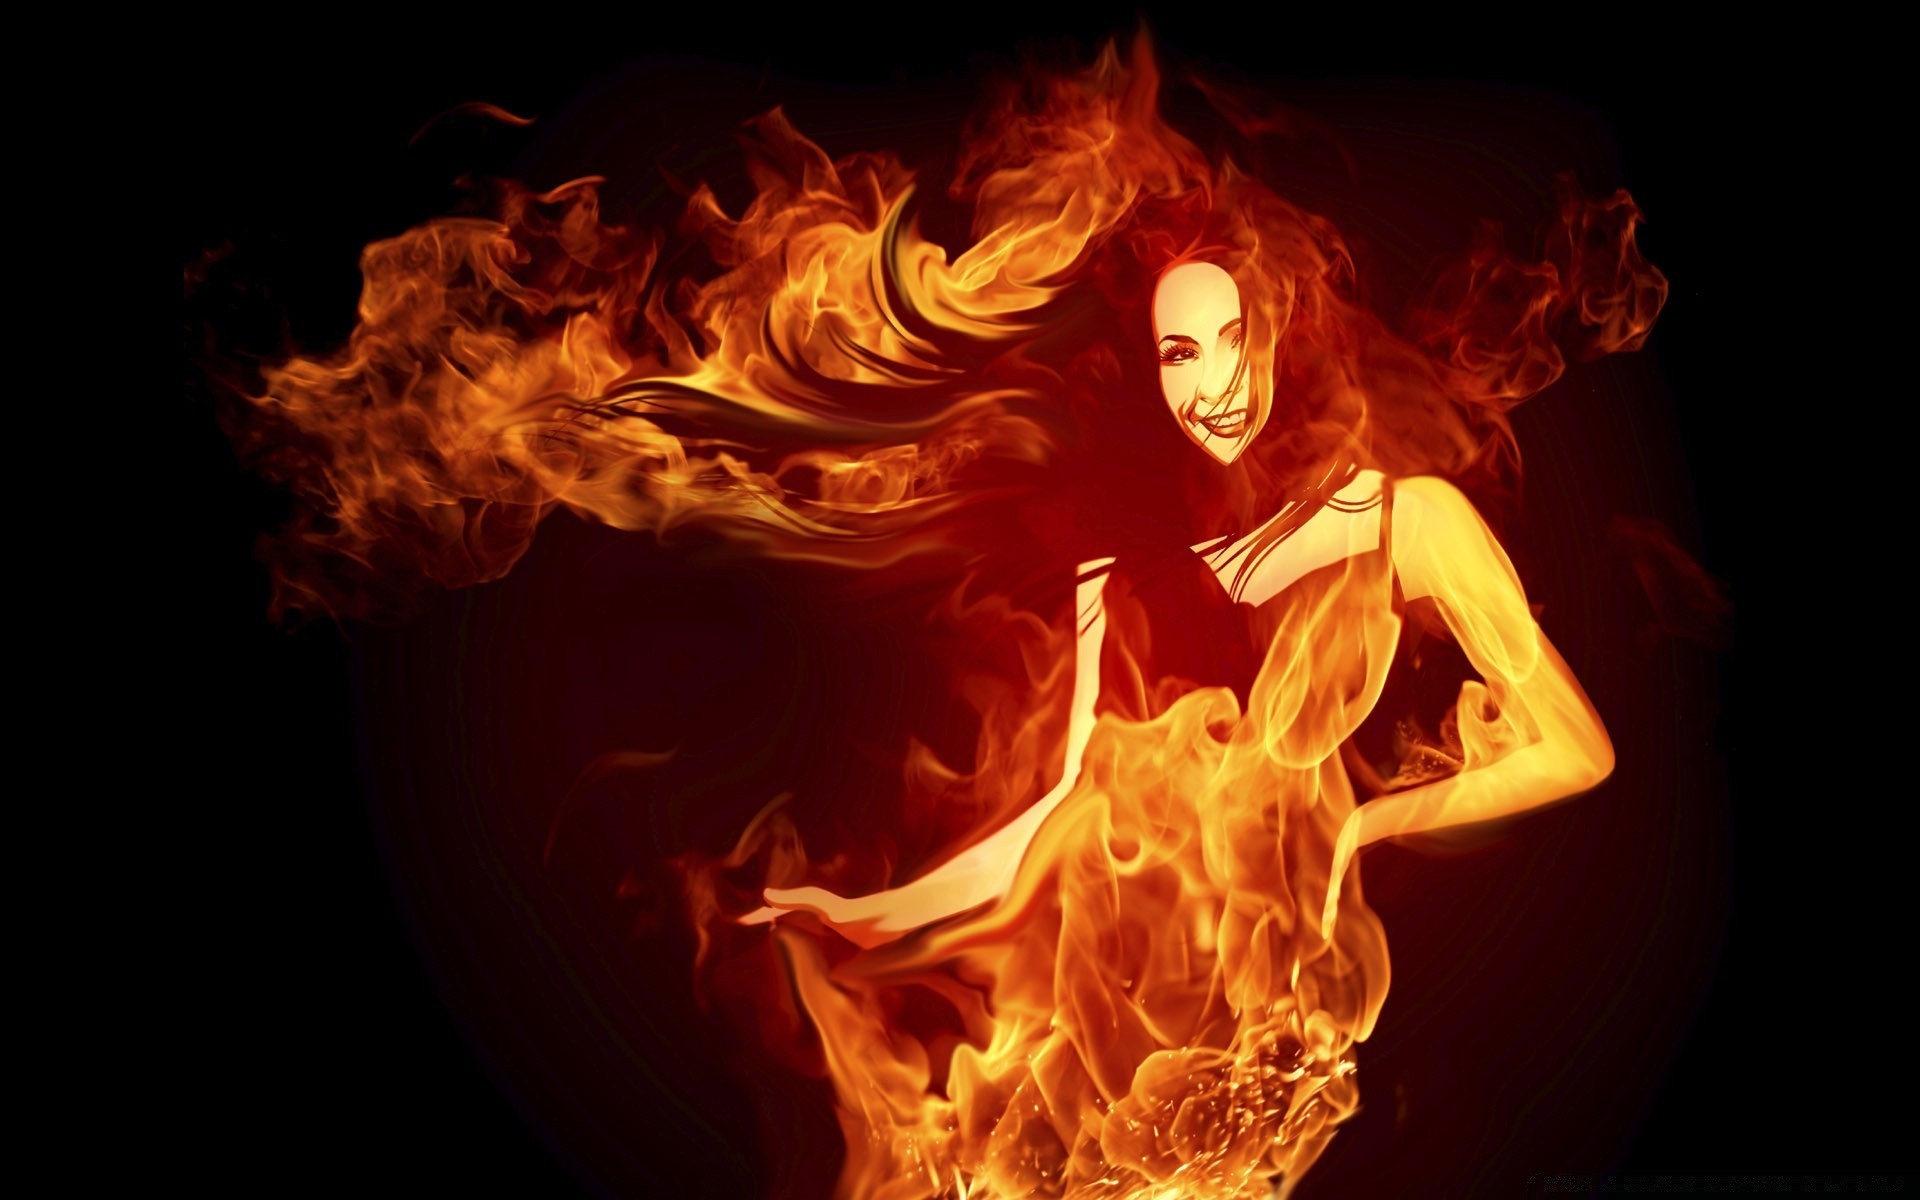 огонь пламя горячая дым тепло опасность сжечь сожгли инферно костер легковоспламеняющиеся магия блейз язык энергии камин тепло пожар костра